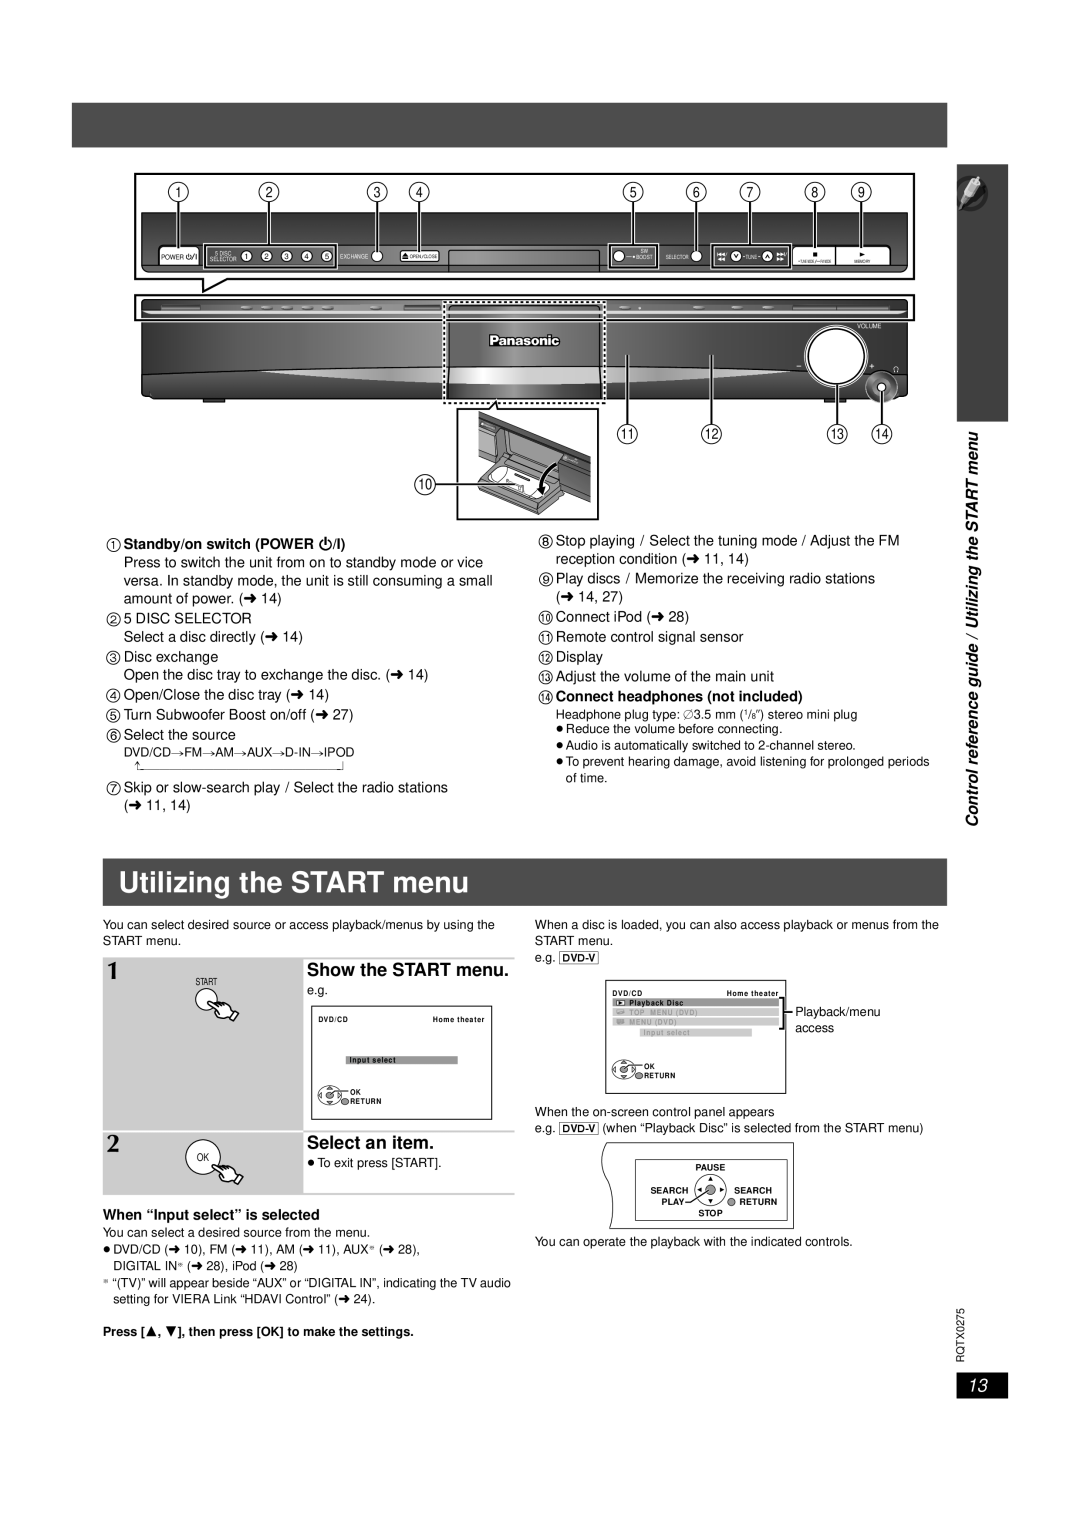 Panasonic SC-PT665 manual Utilizing the START menu, Select an item, Show the START menu 